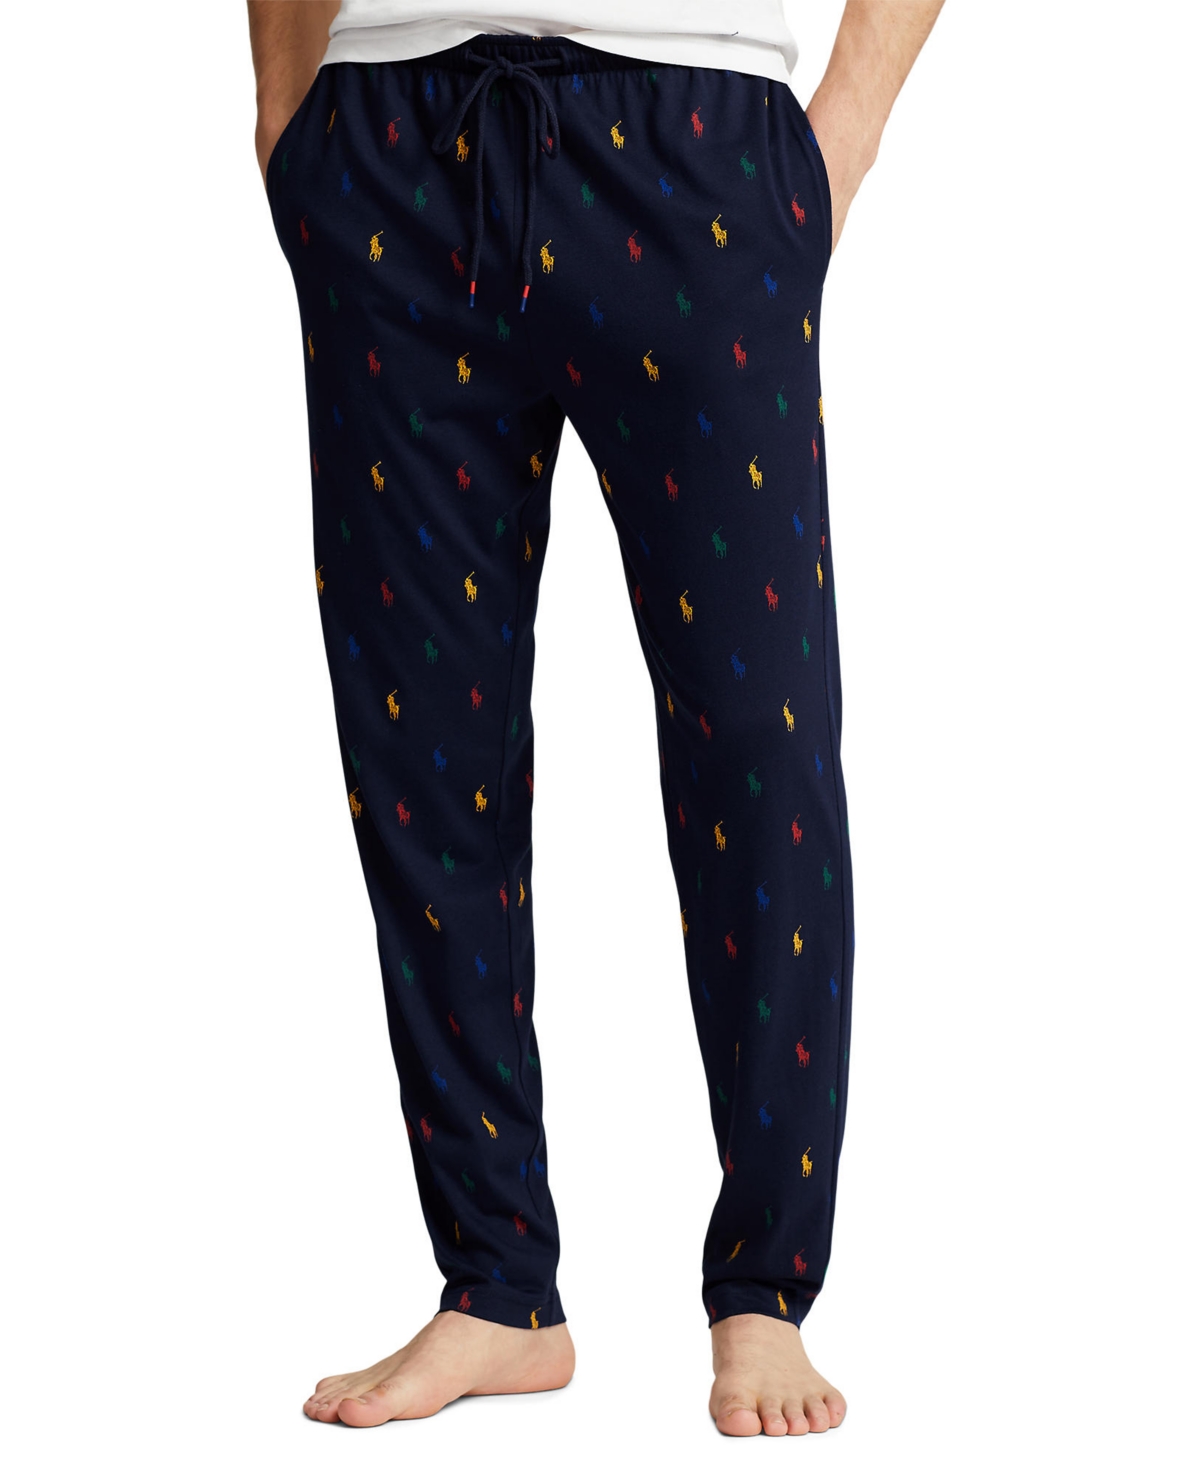 Men's Supreme Comfort Pajama Pants - Prim Aopp